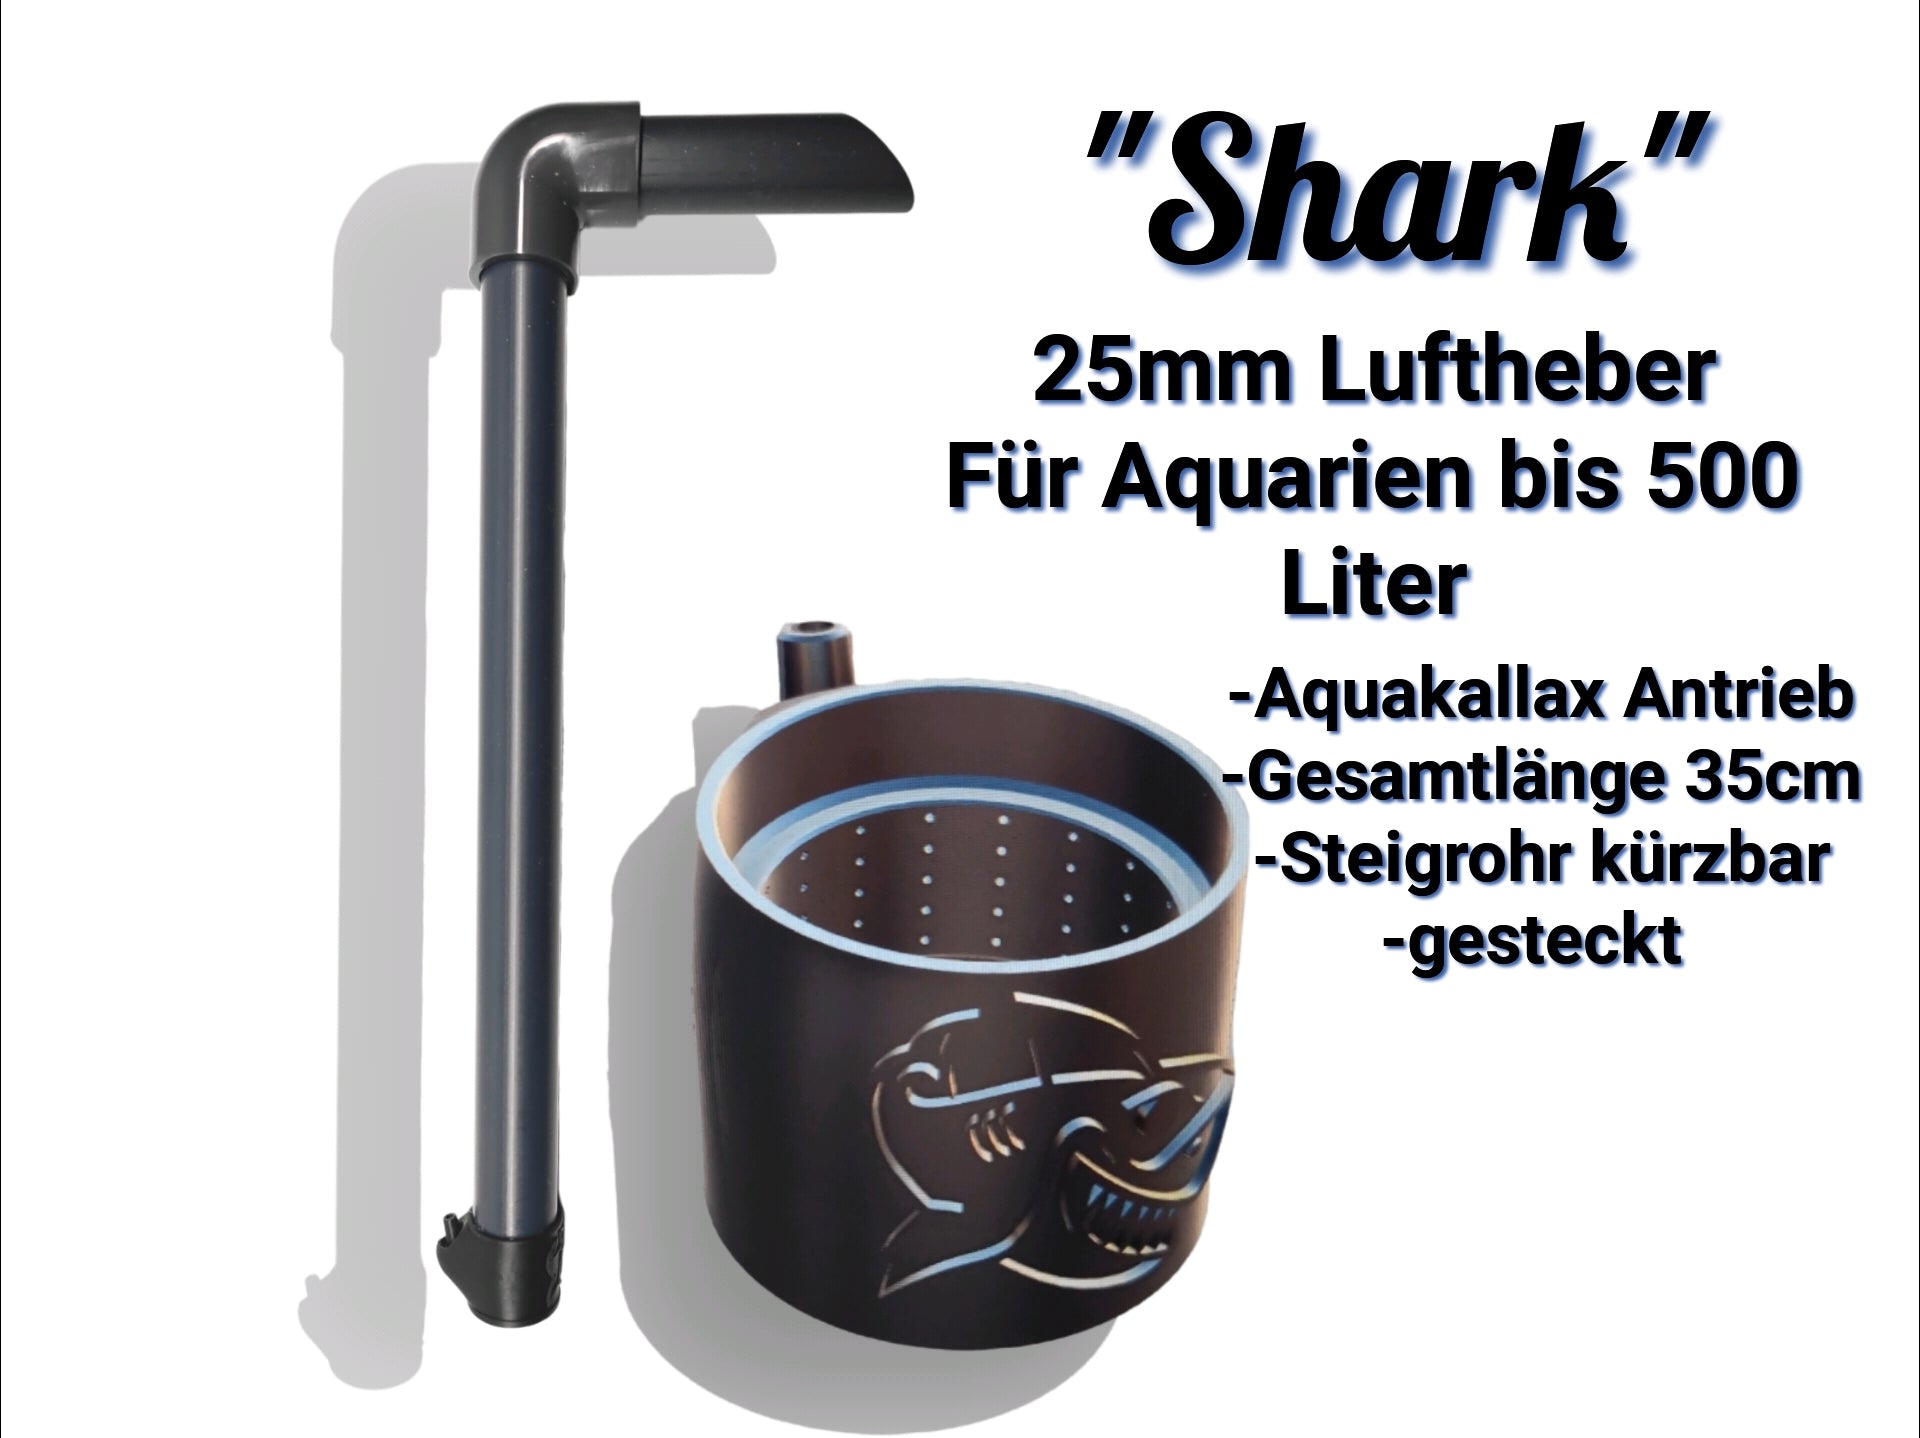 Der Aquakallax Luftheber mit 25mm "Shark" Antriebsteil. Für Aquarien bis 500 Liter geeignet. Gesamtlänge 35cm, kürzbares Steigrohr, gesteckte Version